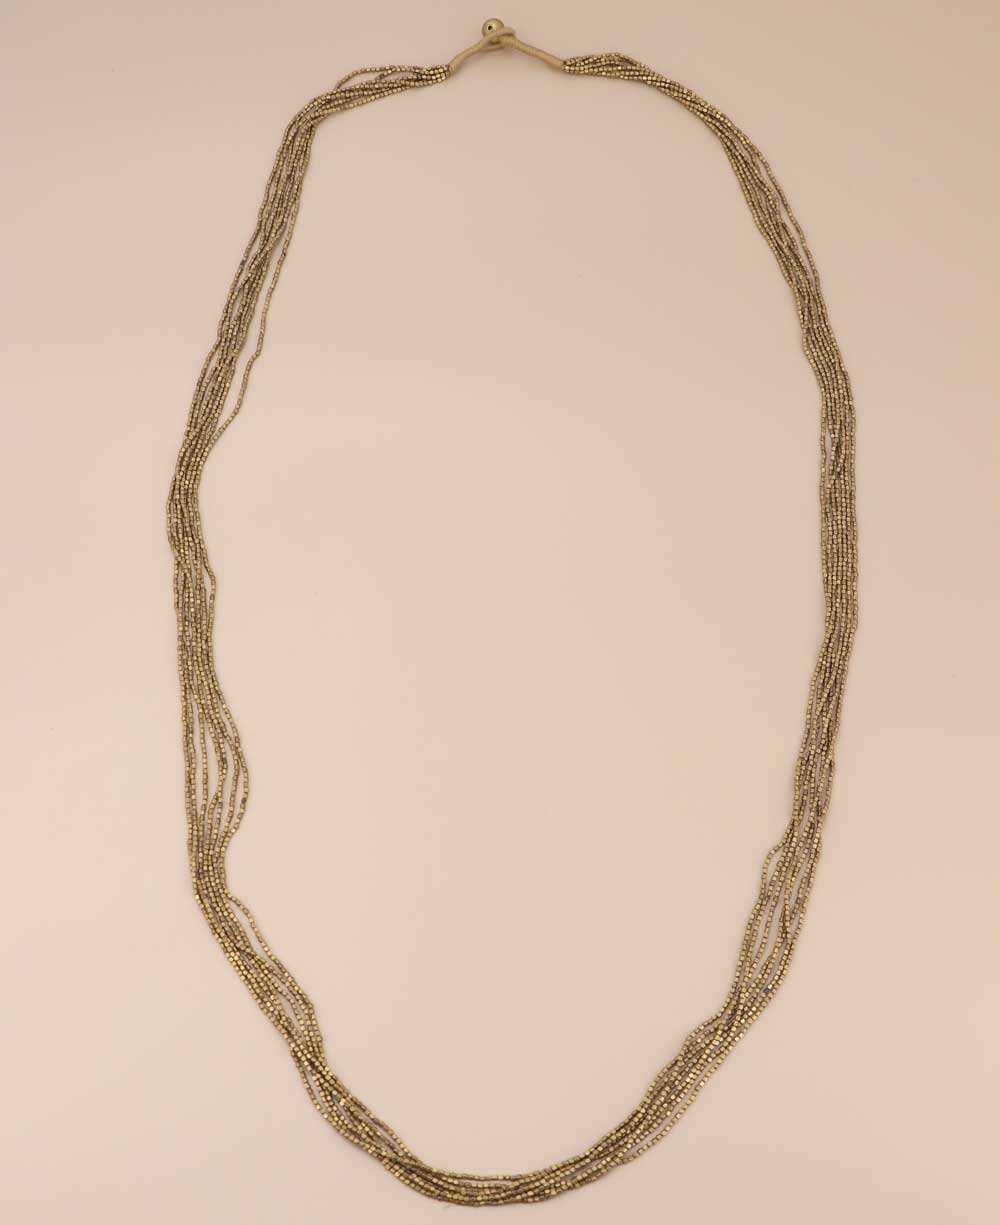 Tibetan handcrafted bead necklace